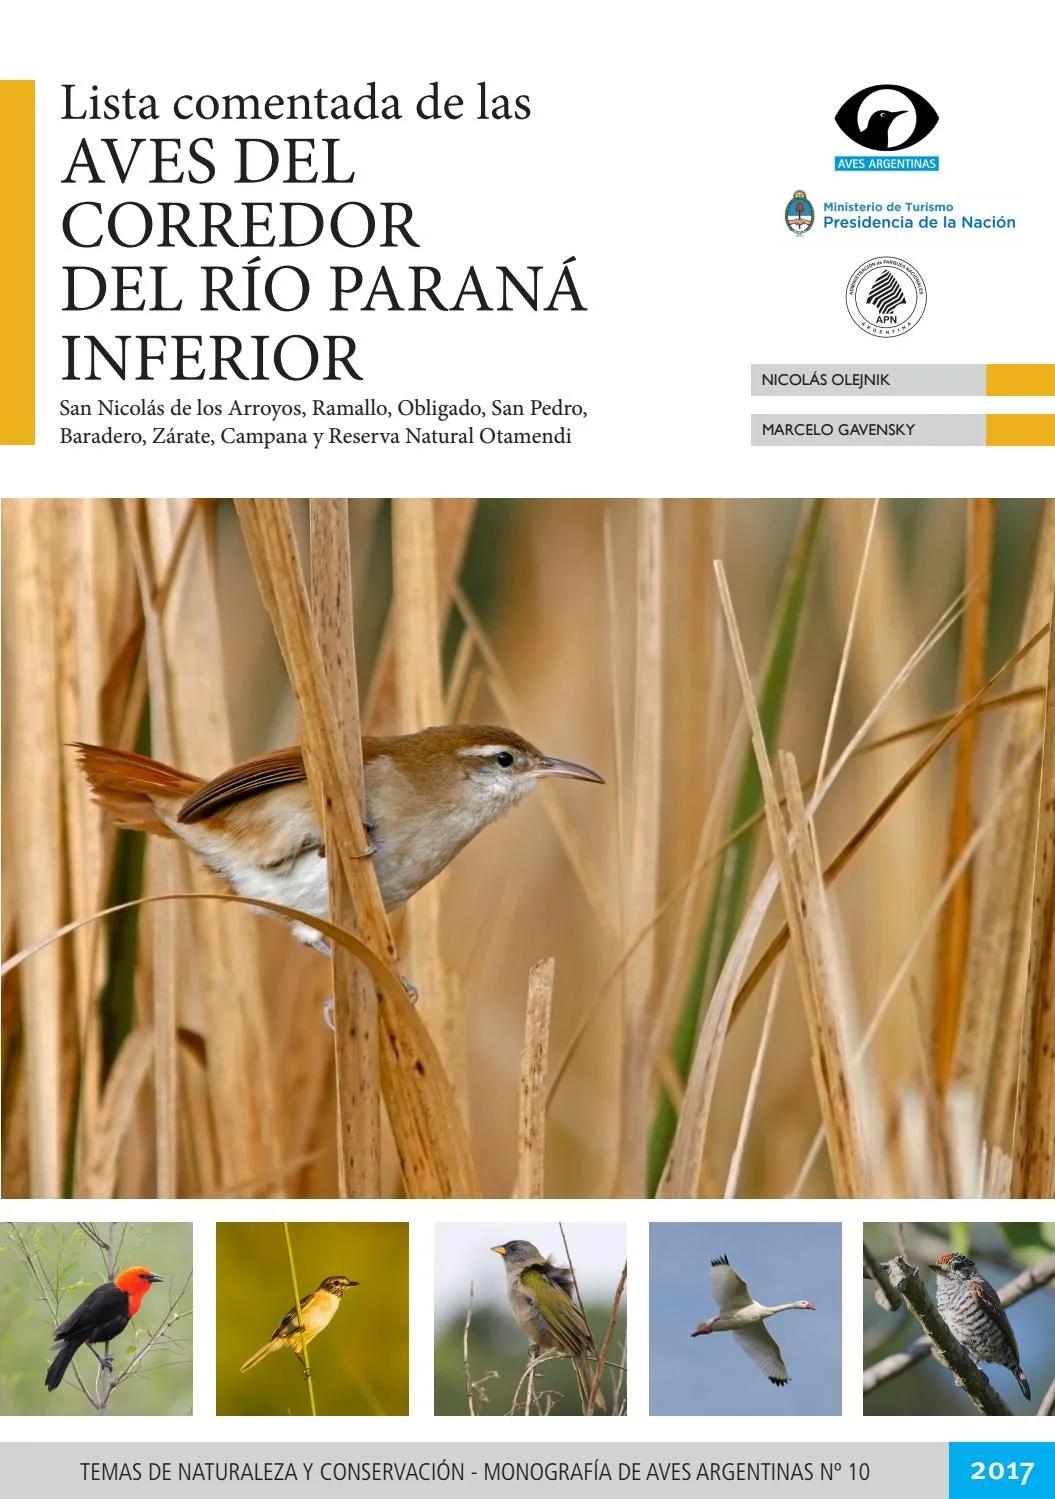 aves del delta del parana - Qué animales hay en el Delta del Paraná